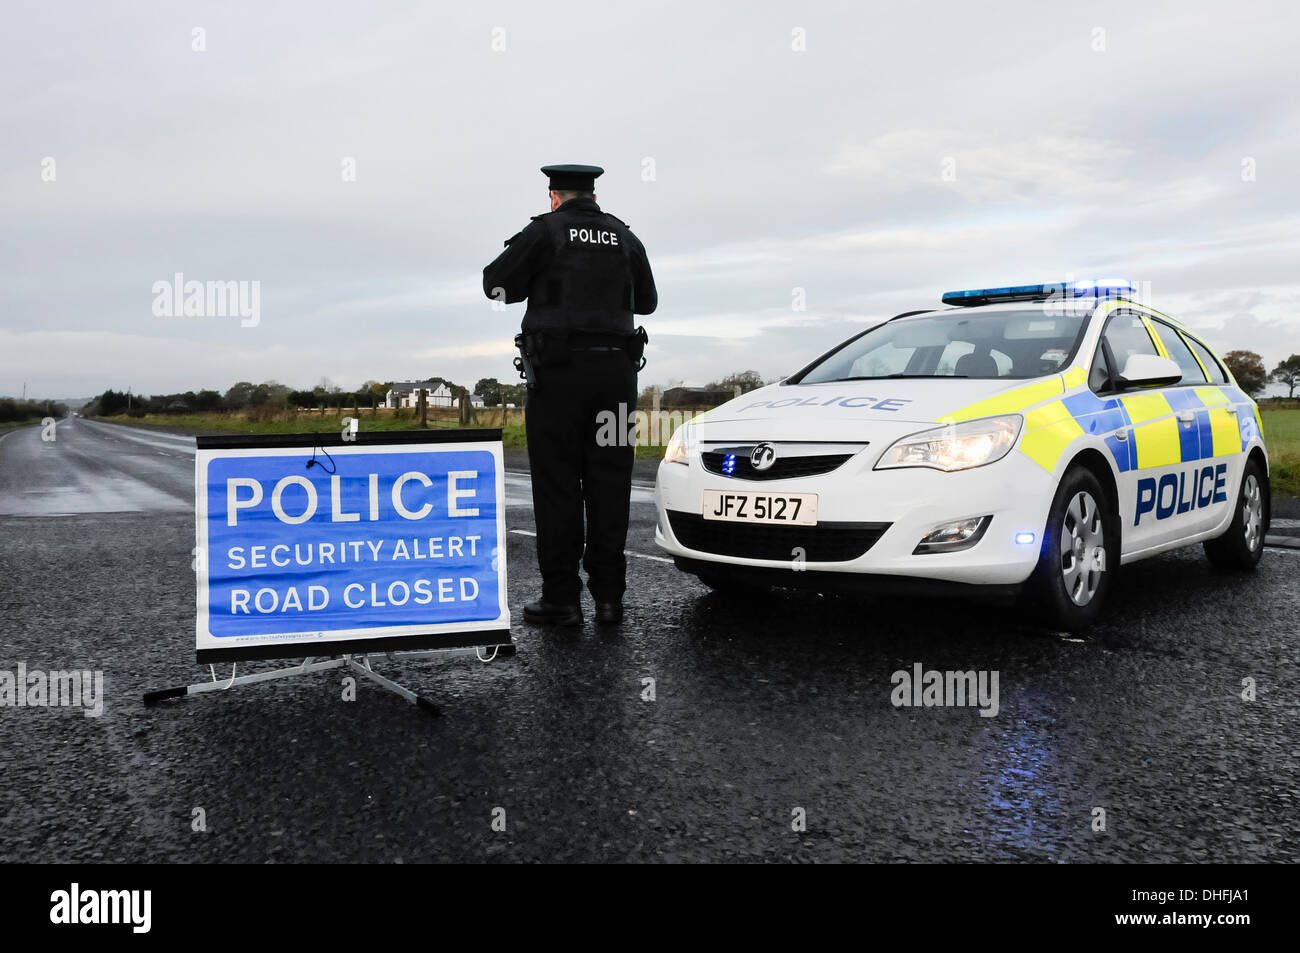 Nutts Corner, Co. Antrim, Irlanda del Nord. 9 Nov 2013 - Un avviso di sicurezza chiude la A52 tra Belfast e Antrim, il principale di una classe di strada per l'aeroporto internazionale, per un secondo giorno. Nulla è stato ancora trovato. Credito: Stephen Barnes/Alamy Live News Foto Stock